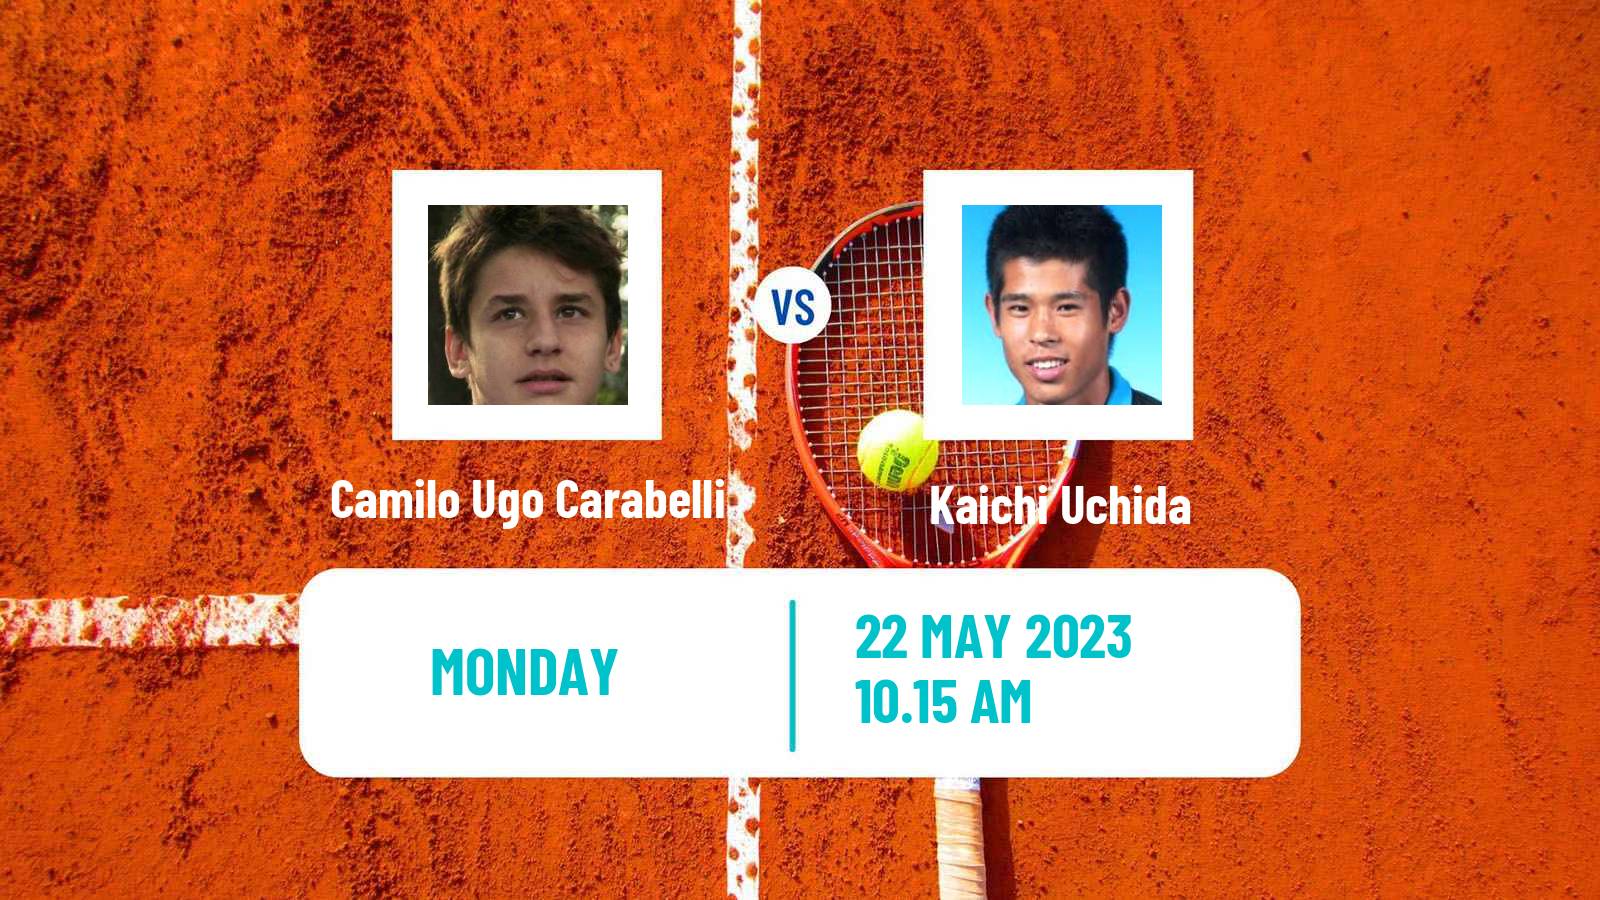 Tennis ATP Roland Garros Camilo Ugo Carabelli - Kaichi Uchida